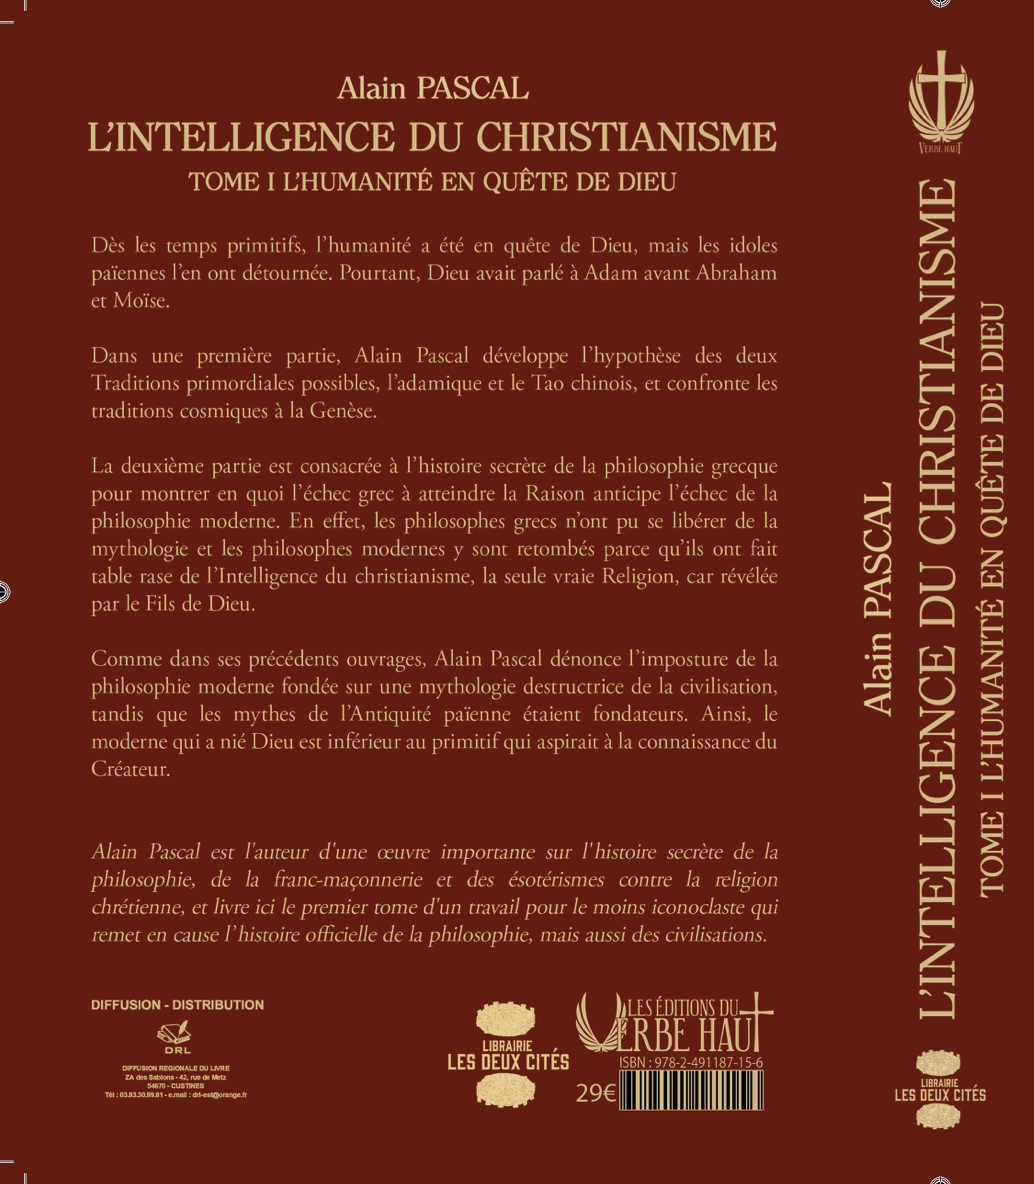 L’Intelligence du Christianisme, Tome 1 “L’Humanité en quête de Dieu”, de Alain Pascal